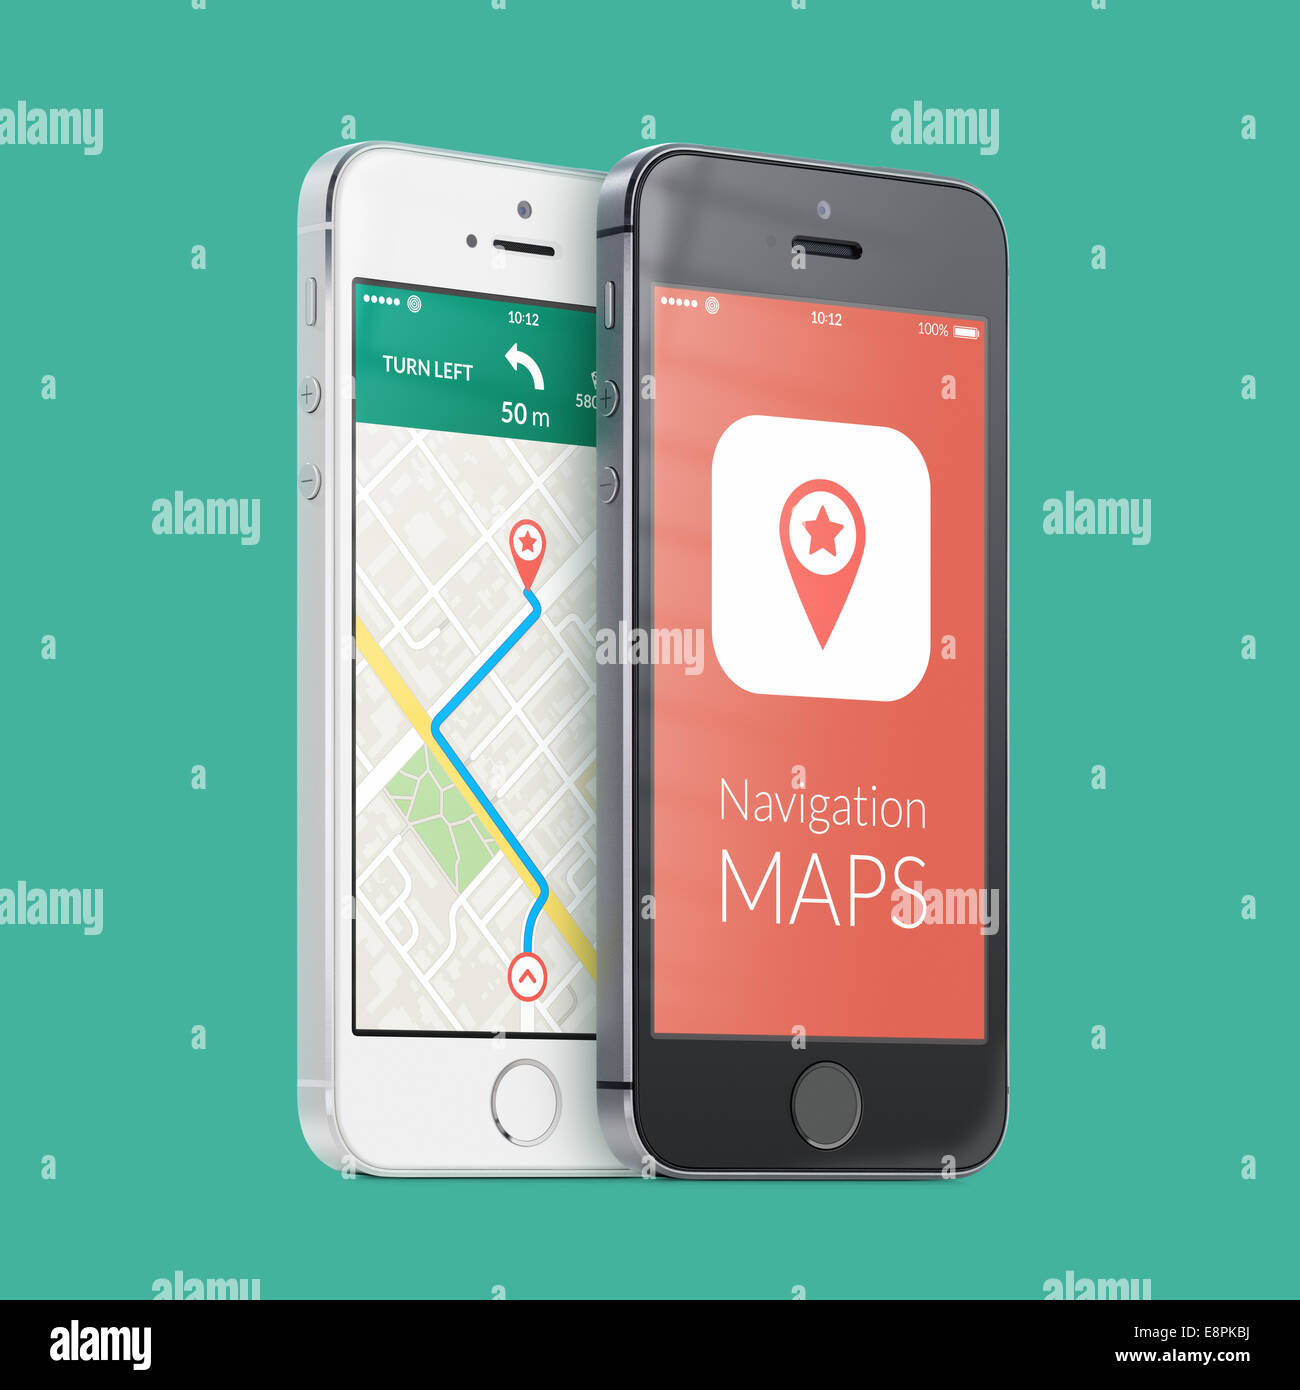 Les smartphones en noir et blanc avec la carte l'application de navigation GPS avec itinéraire sur l'écran sur le vert. Haute qualité. Banque D'Images